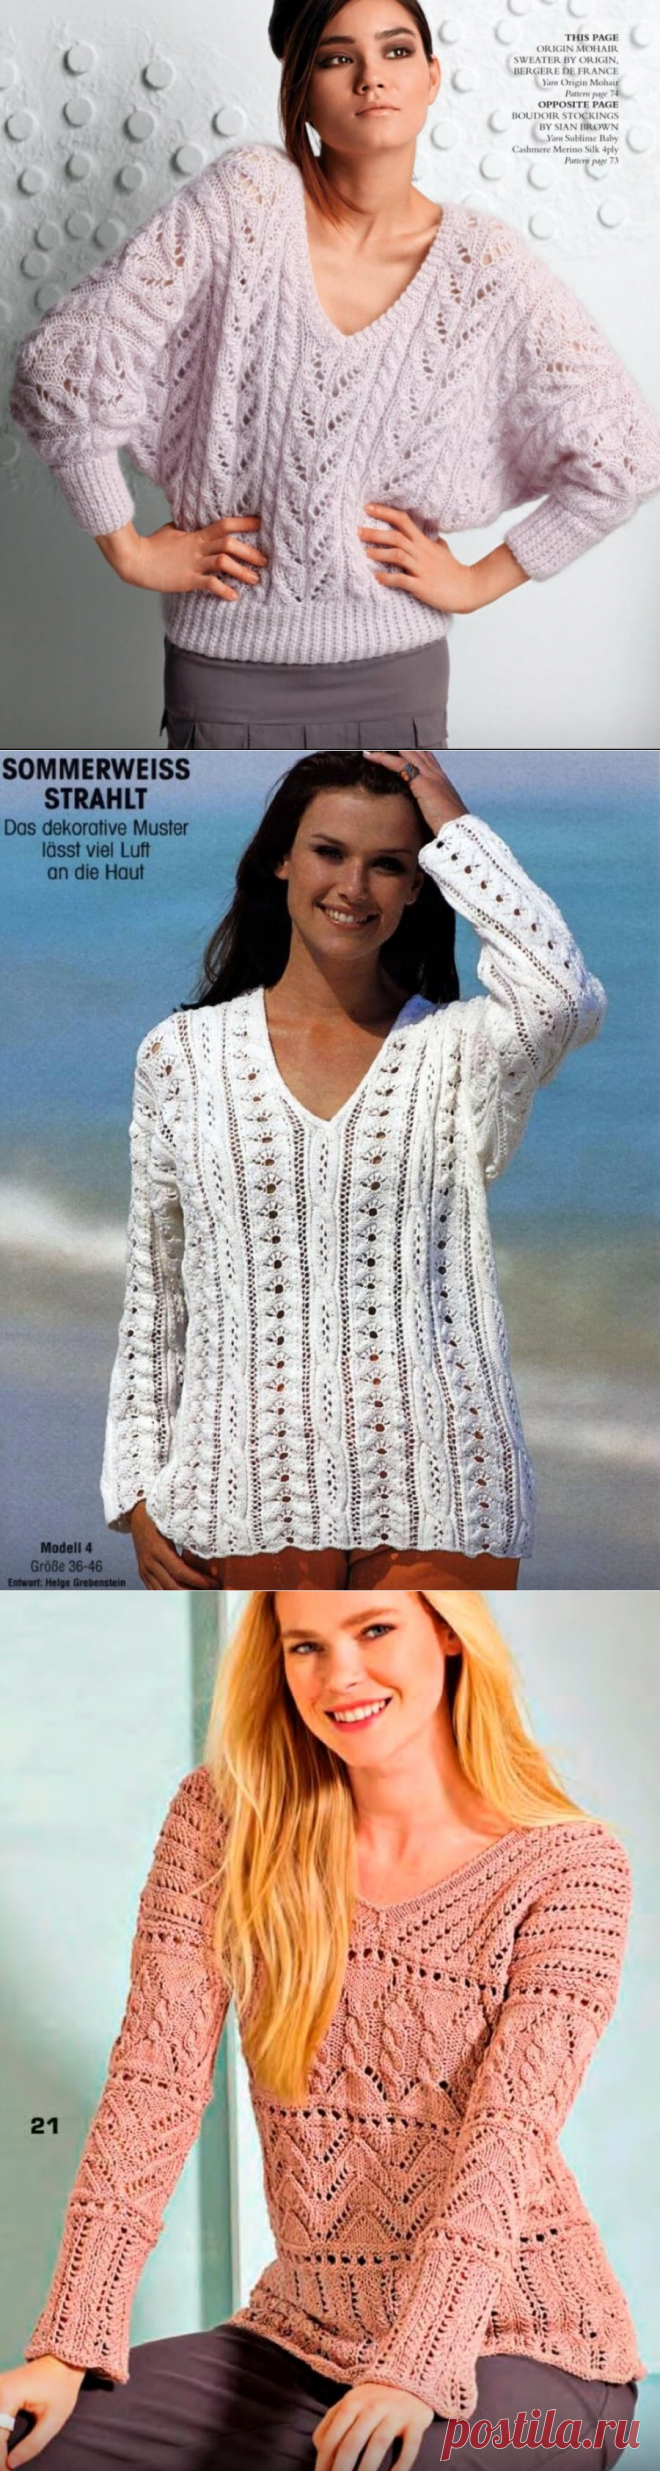 Подборка очень красивых пуловеров с V-образным вырезом + мастер-класс объёмного узора спицами. | Asha. Вязание и дизайн.🌶 | Яндекс Дзен